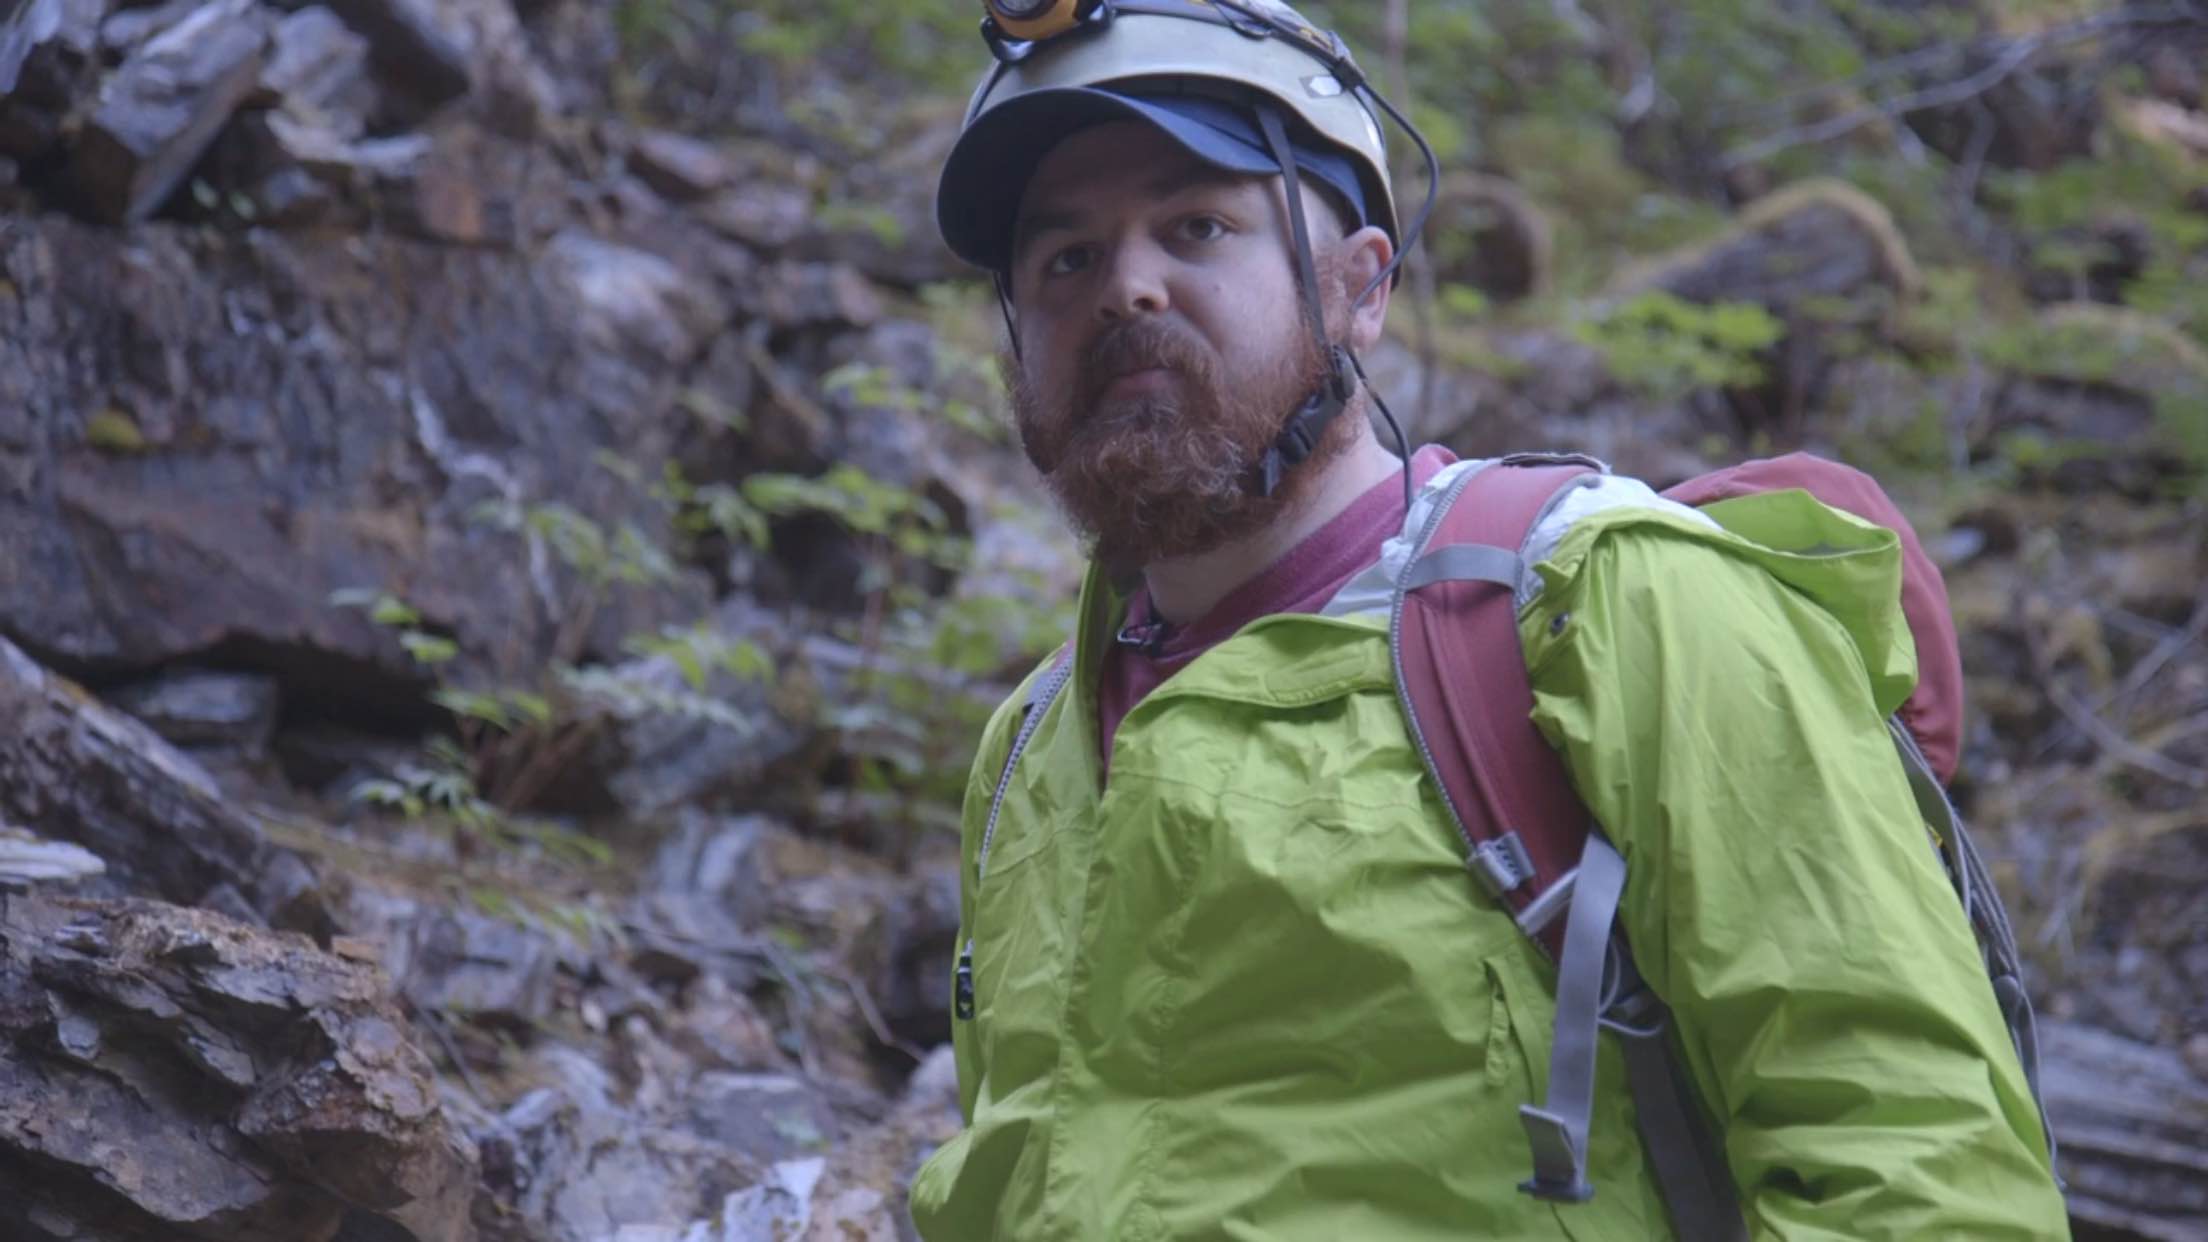 (Screenshot of Brian Weed from Indie Alaska video by Kaysie Ellingson)